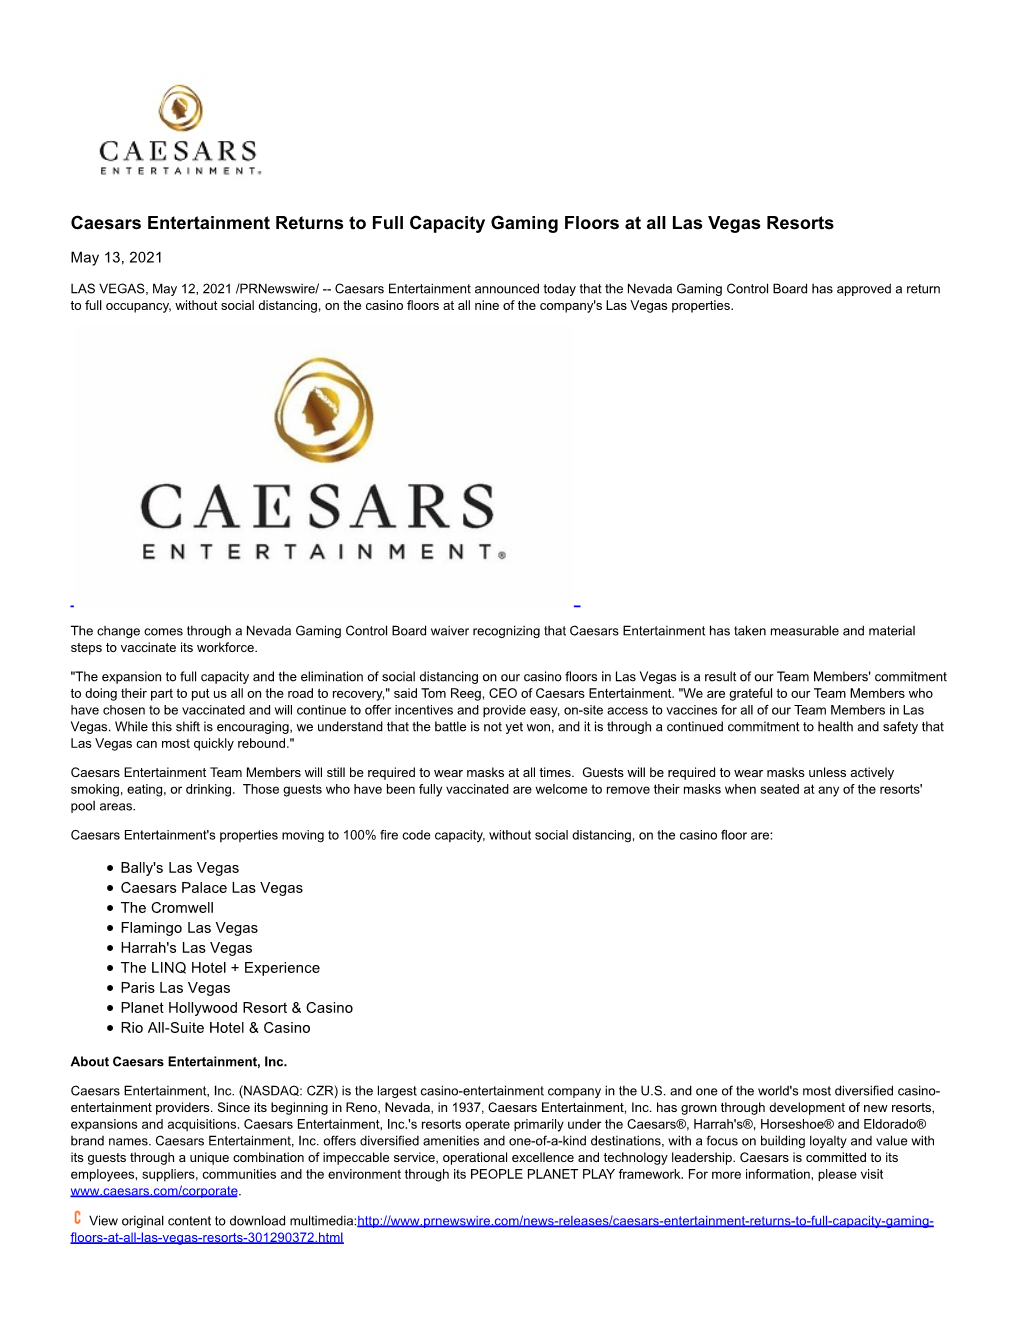 Caesars Entertainment Returns to Full Capacity Gaming Floors at All Las Vegas Resorts